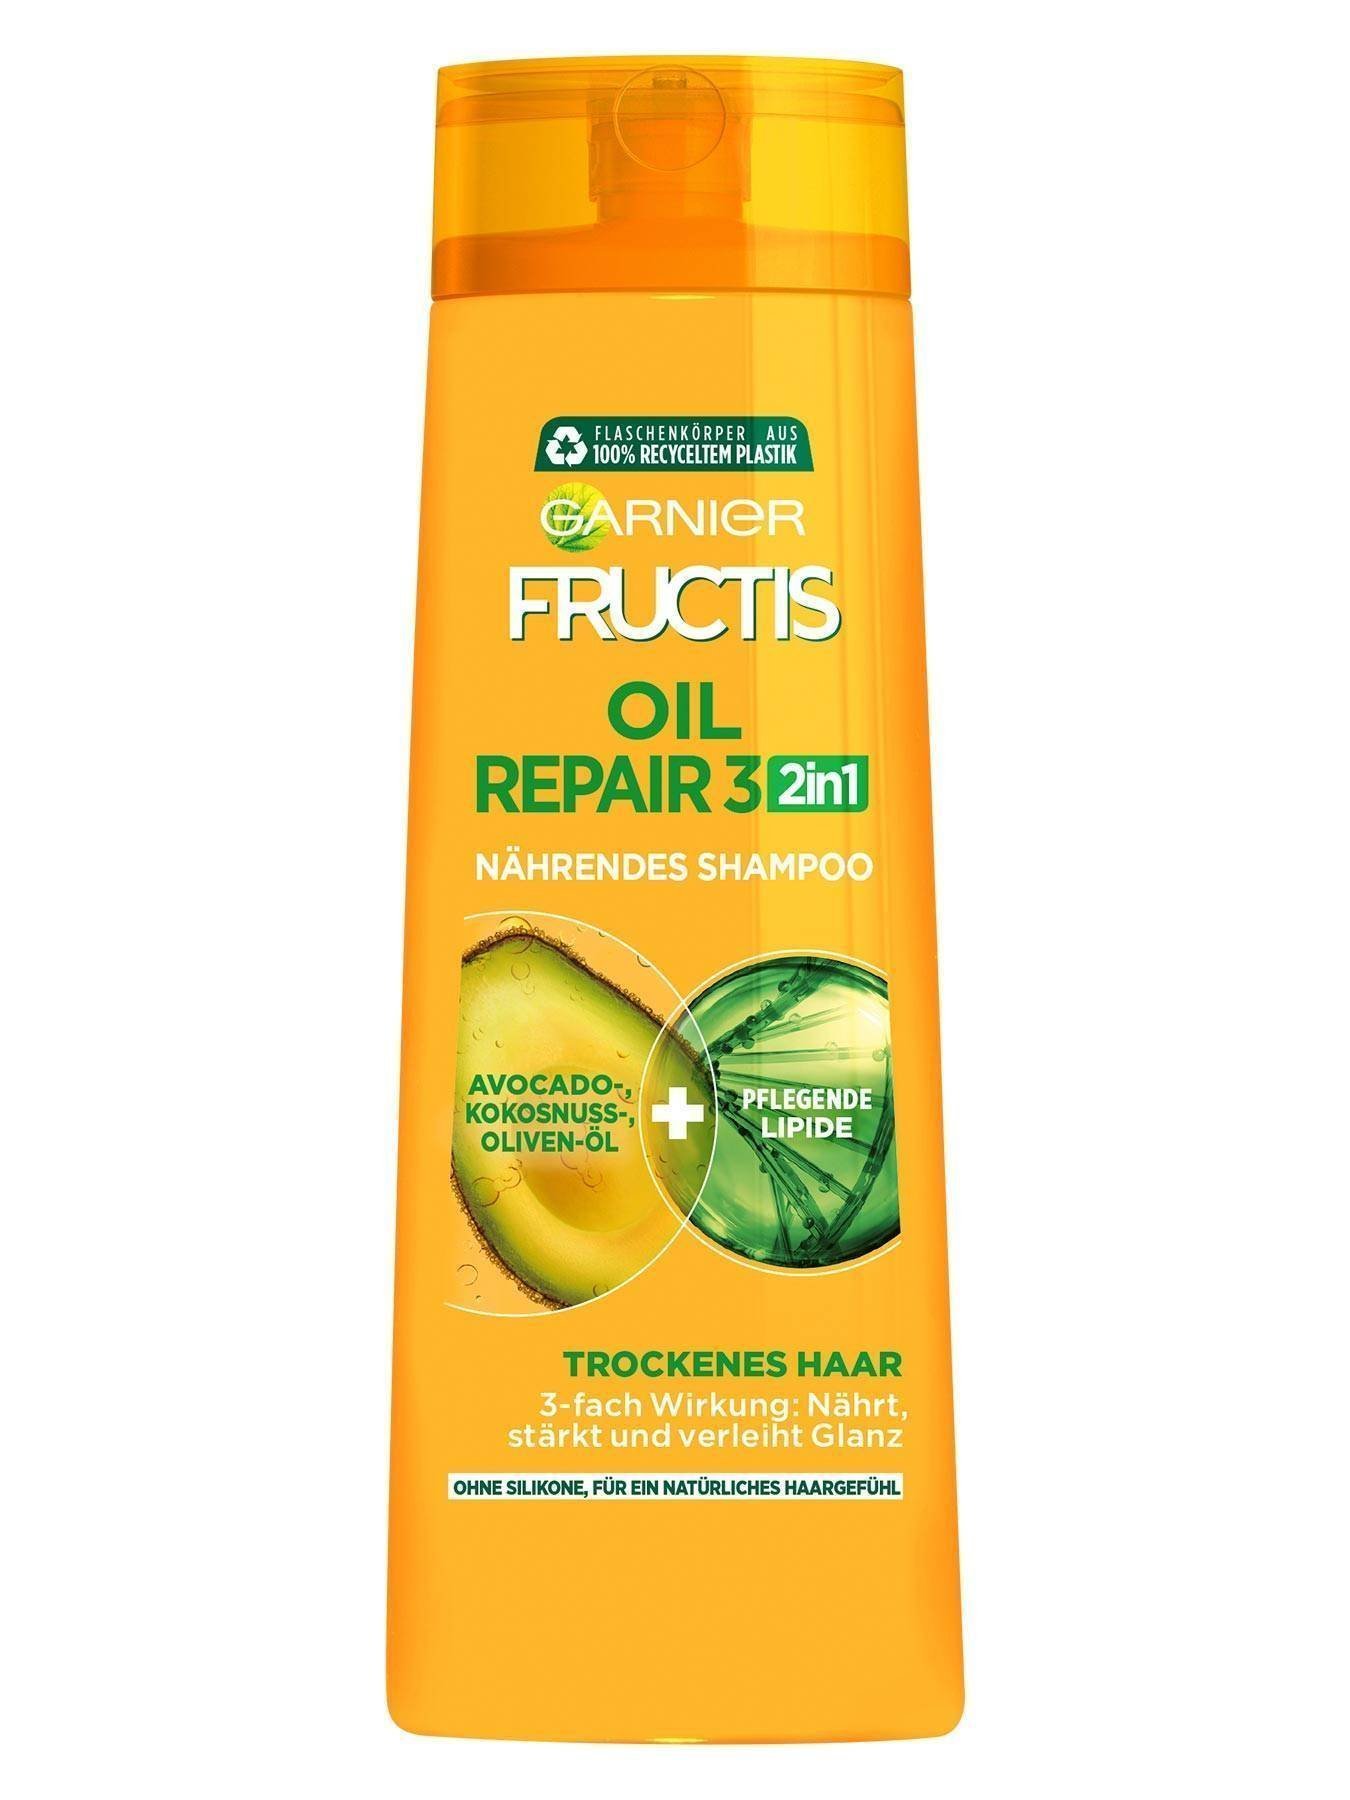 Kraeftigendes-Shampoo-2in1-Fructis-Oil-Repair-3-300ml-Vorderseite-Garnier-Deutschland-gross